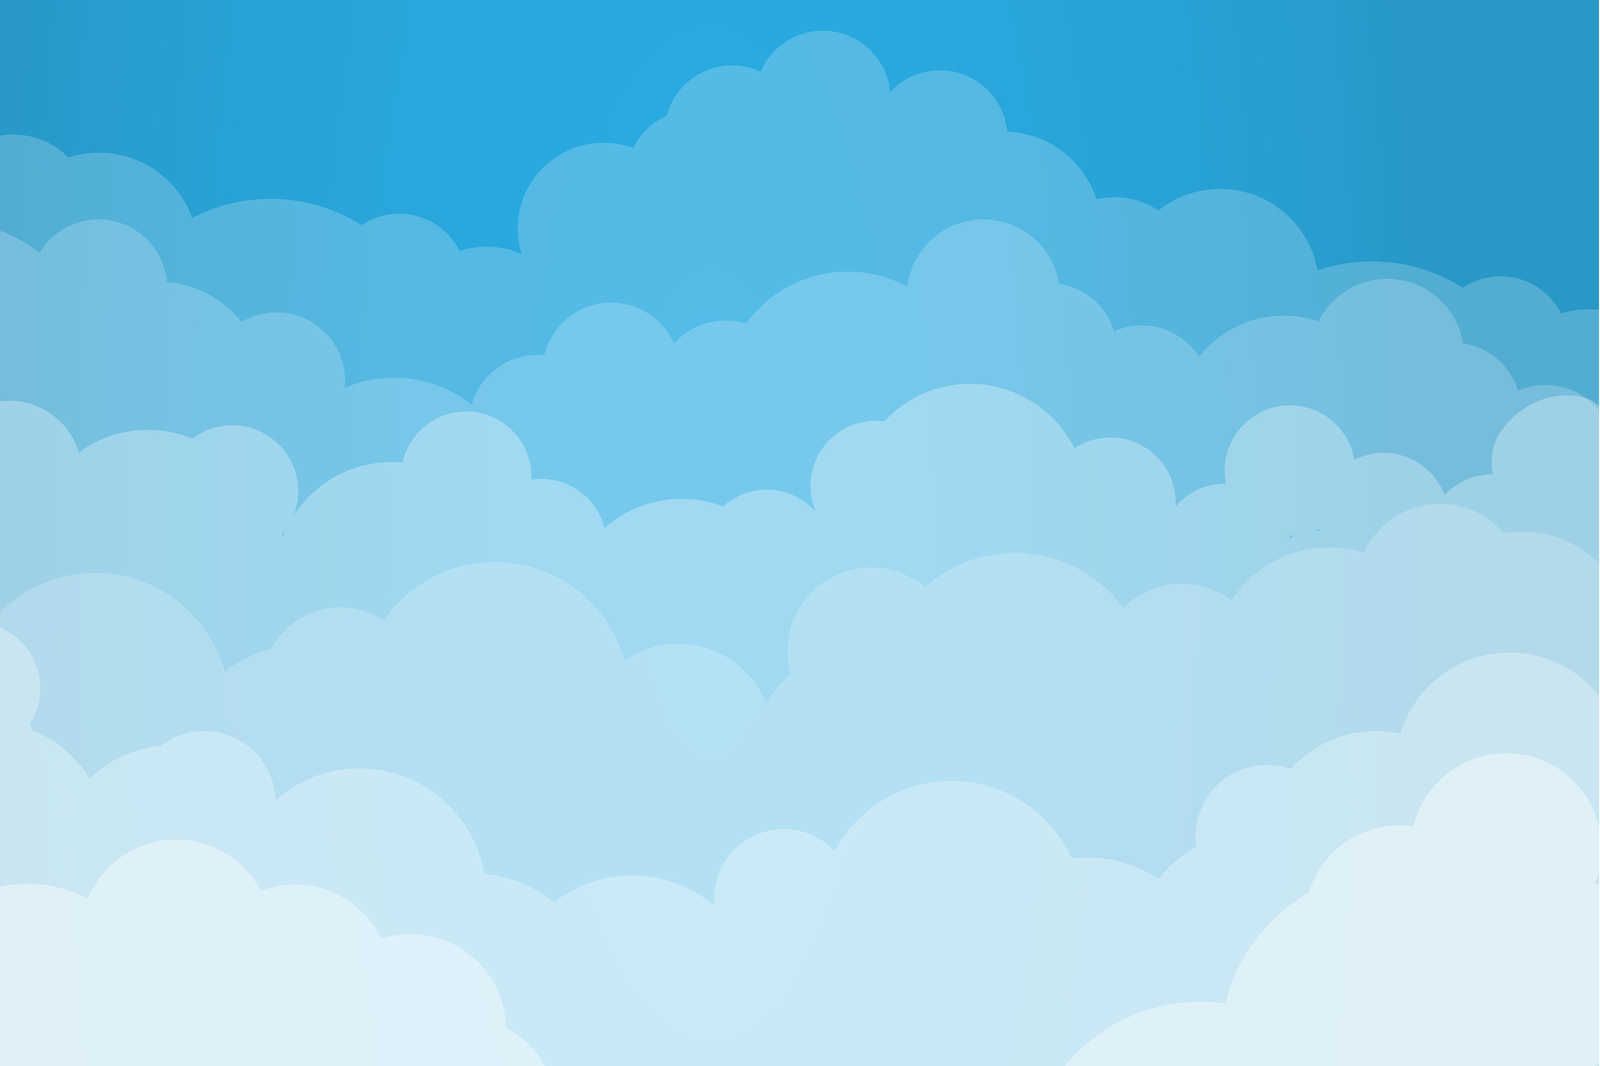             Toile Ciel avec nuages style bande dessinée - 90 cm x 60 cm
        